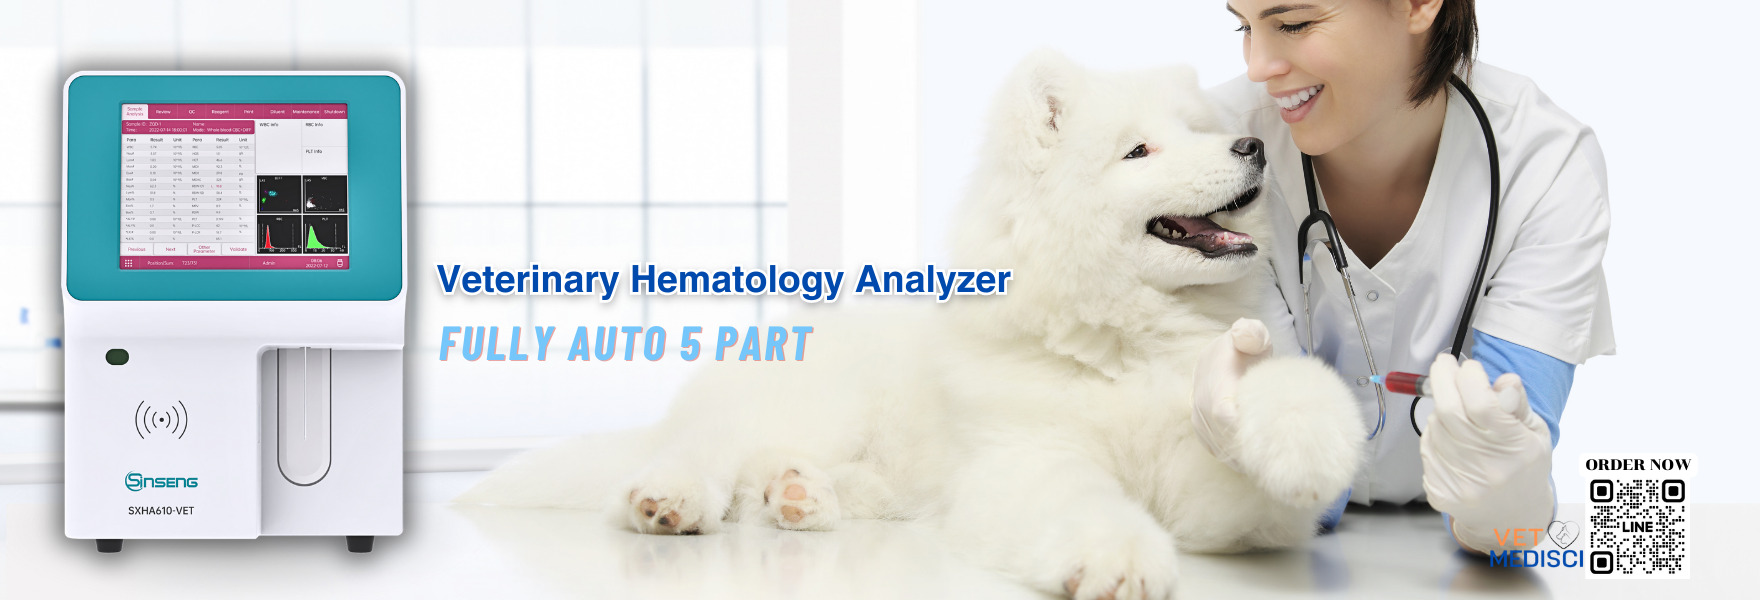 Veterinary Hematology Analyzer